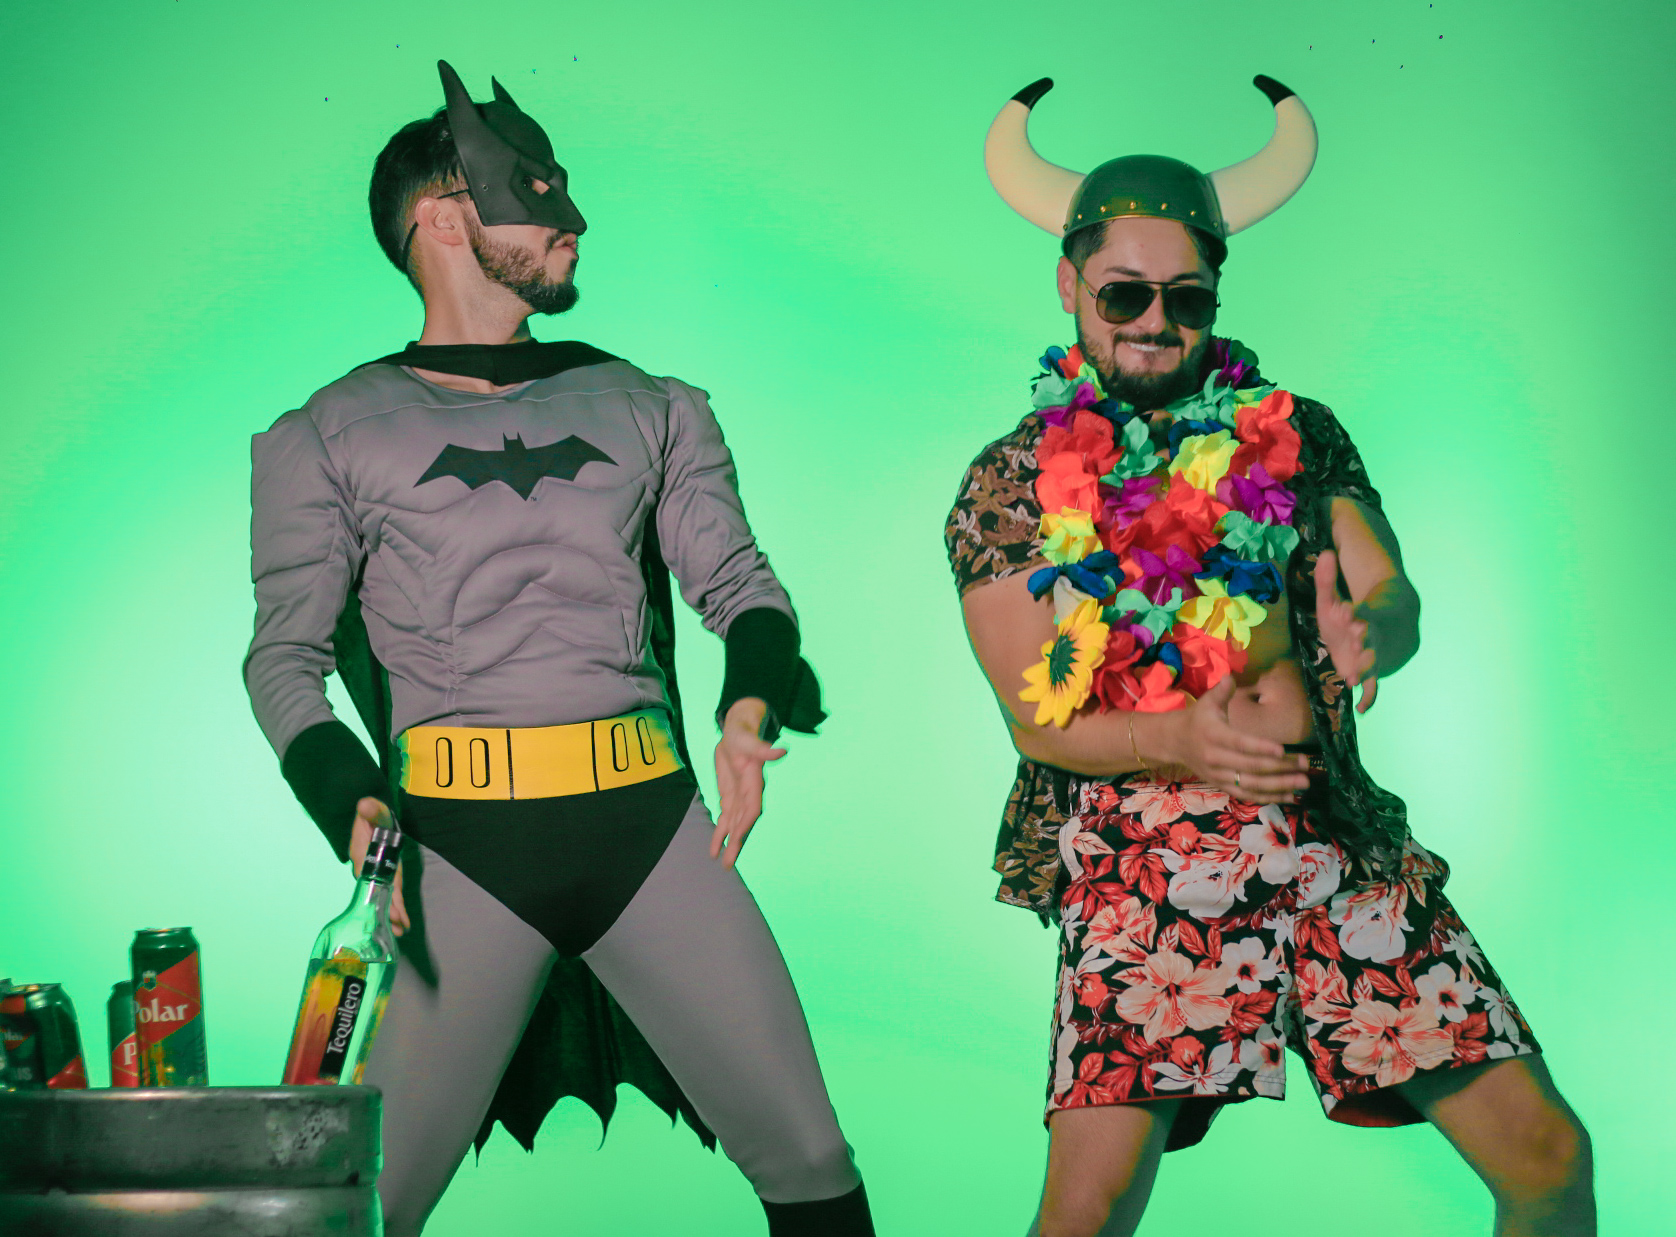 noticia “Chama o Batman”: Dupla de RS aposta em hit para o carnaval